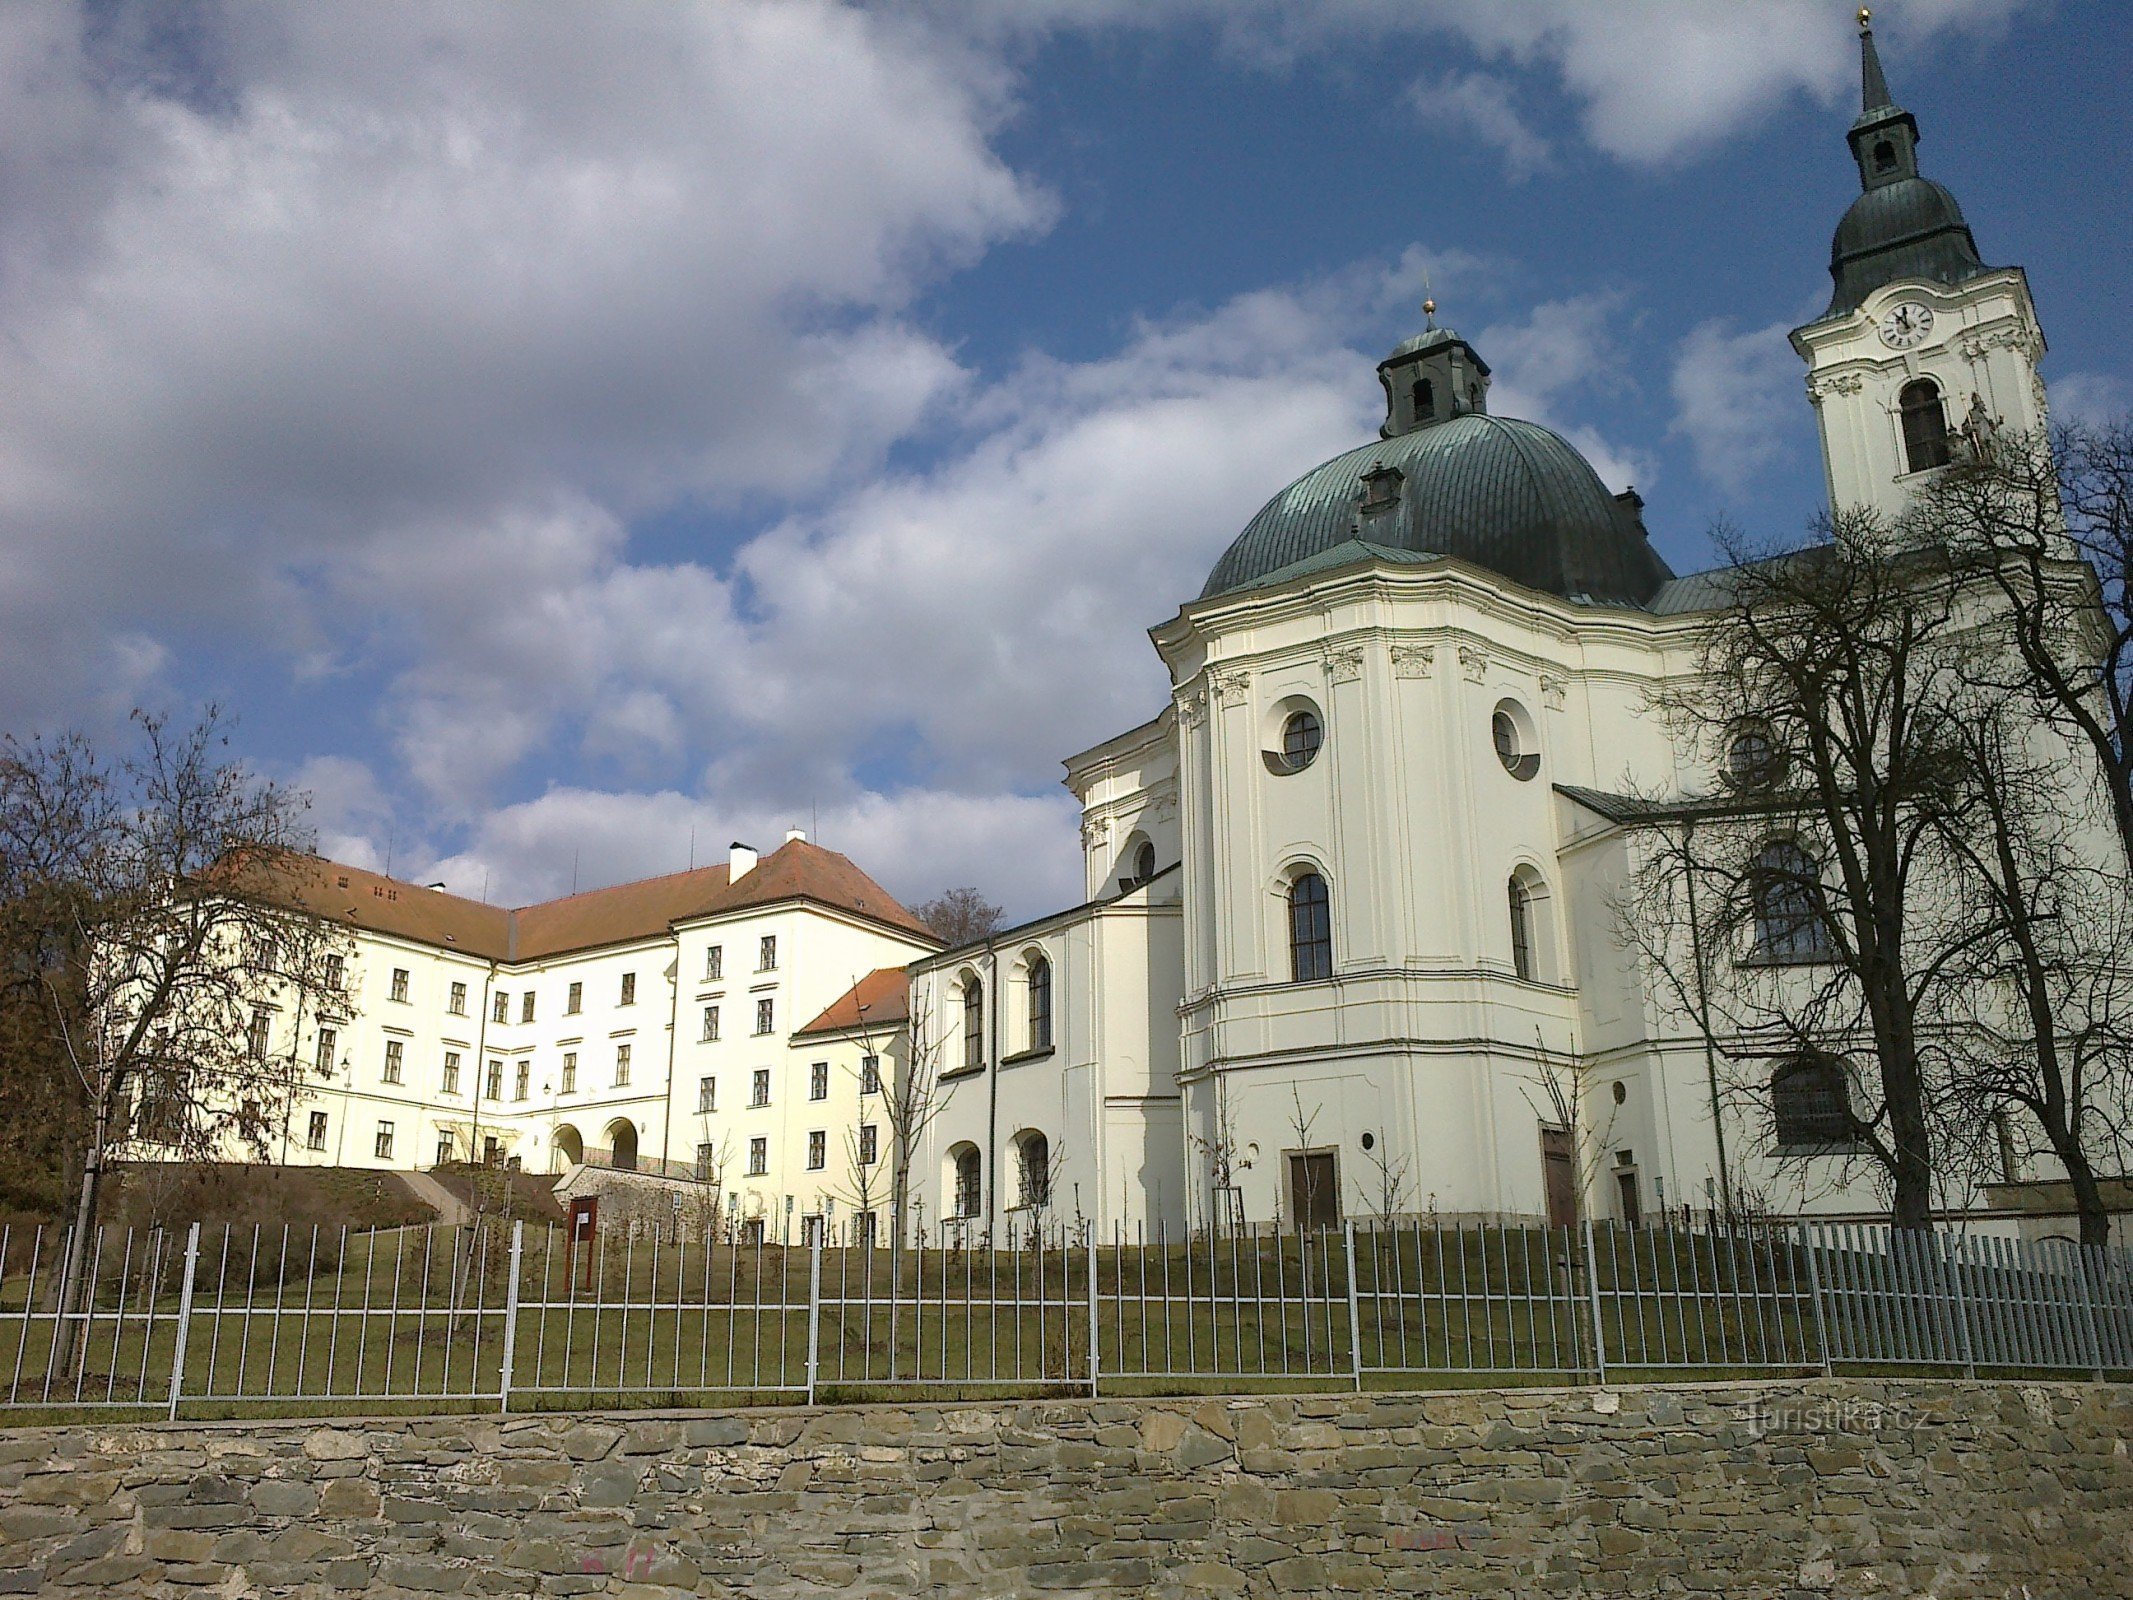 Baptist church and castle